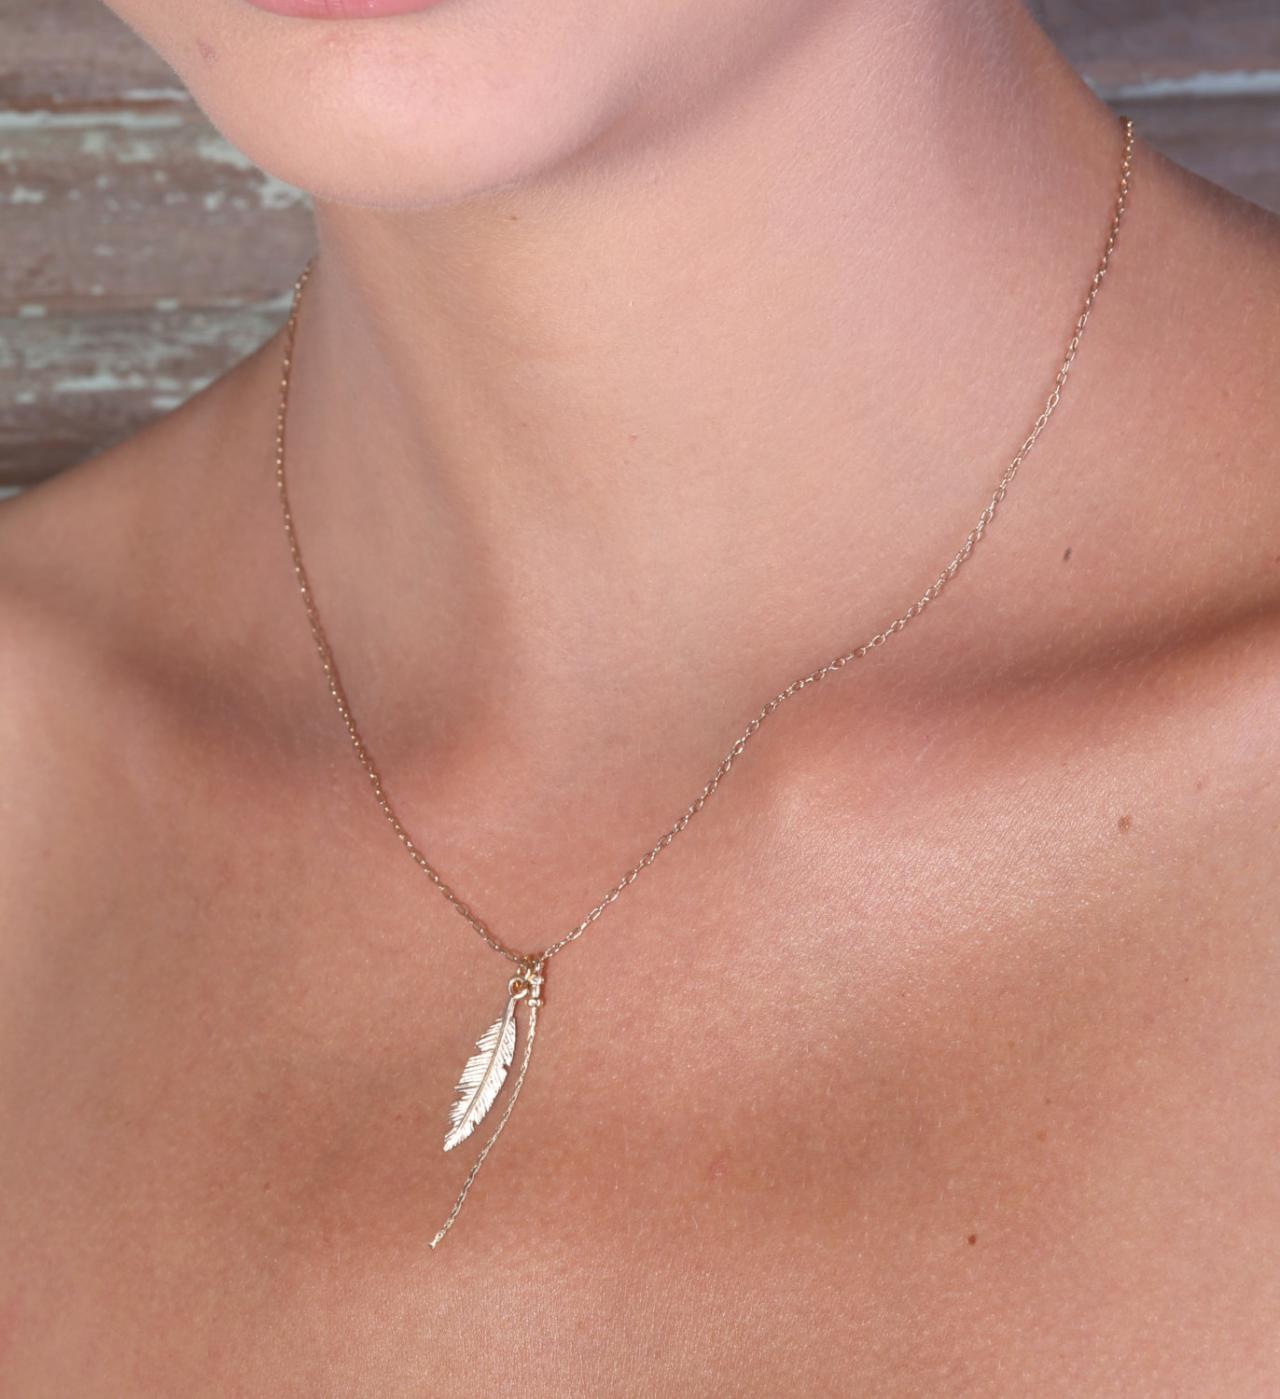 Gold necklace, Feather necklace, unique necklace, leaf necklace, delicate necklace, style, feather pendant - 593